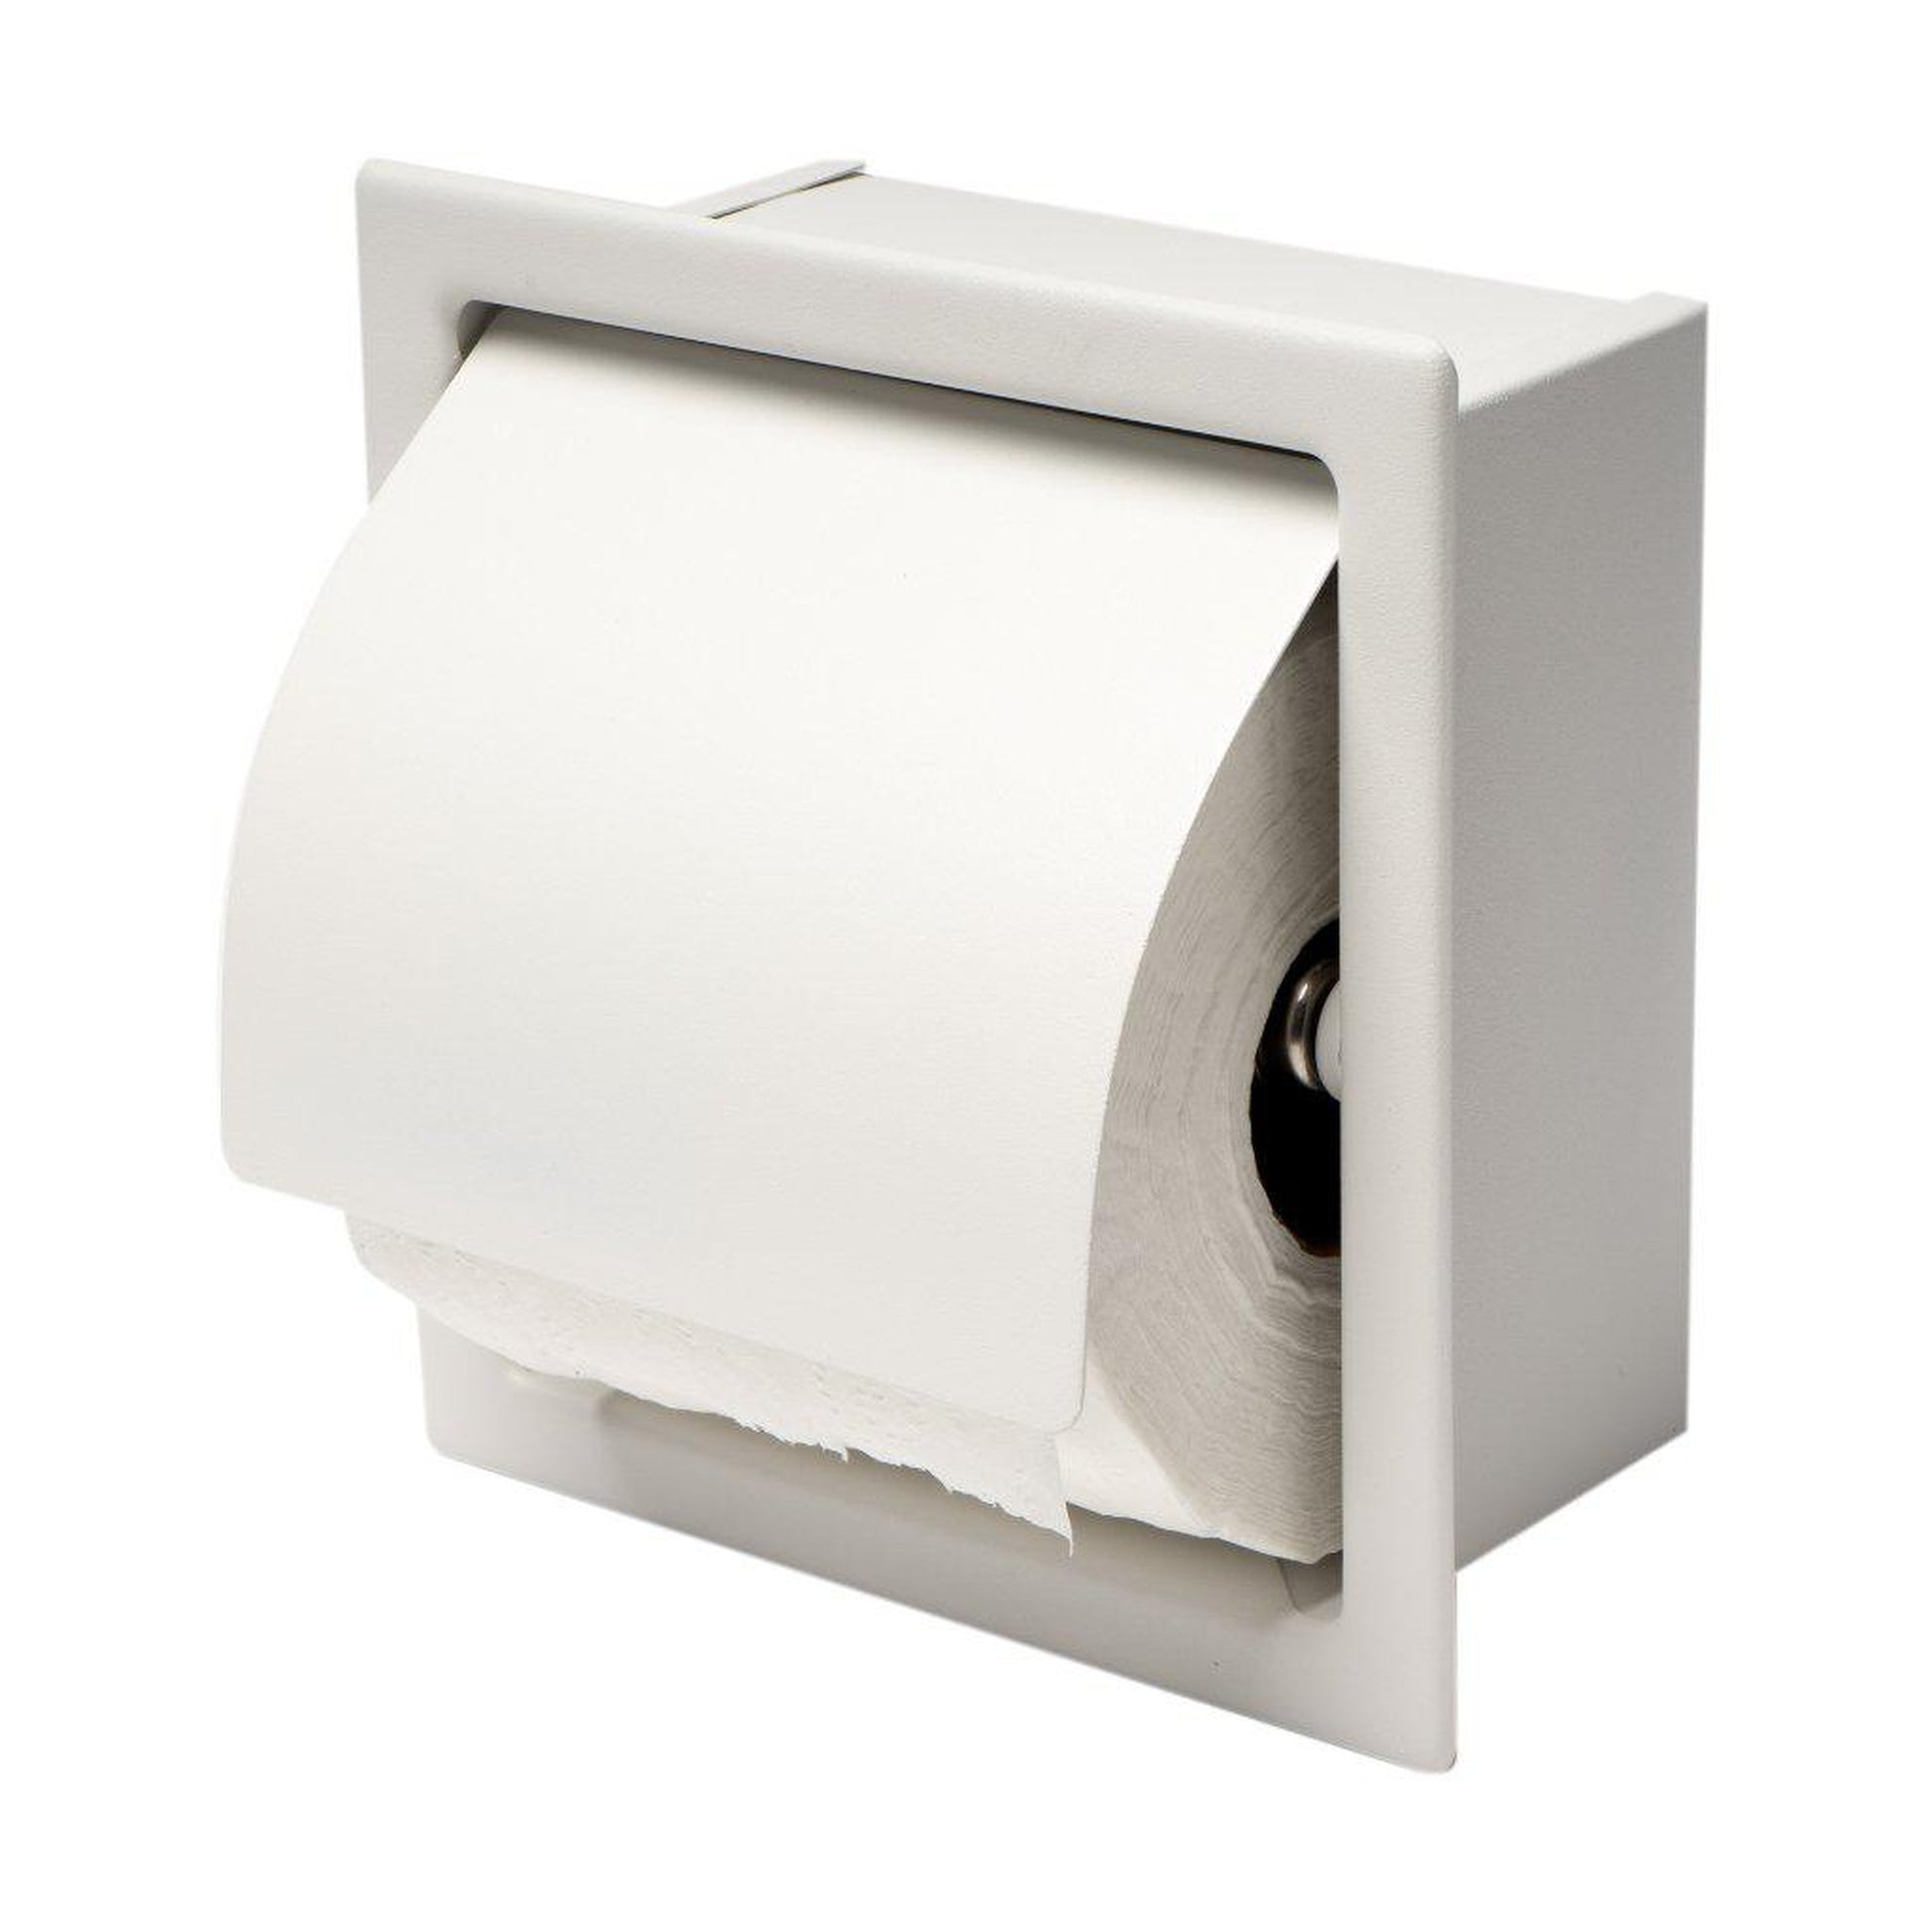 BWE Freestanding Stainless Steel Toilet Paper Holder in Matte Black